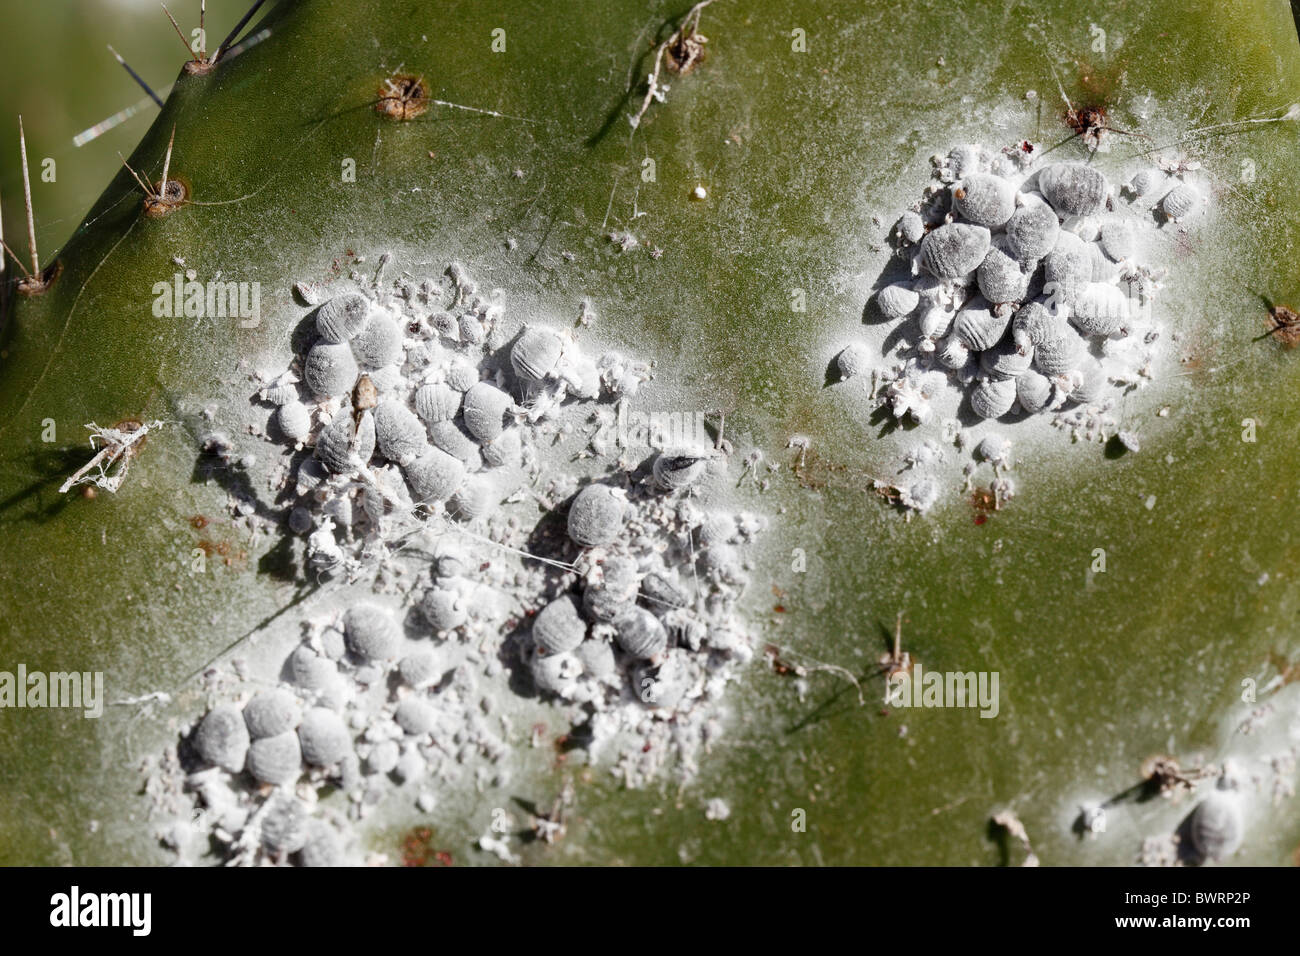 La Cochenille du cactus multiplie ses foyers : Cet insecte qui